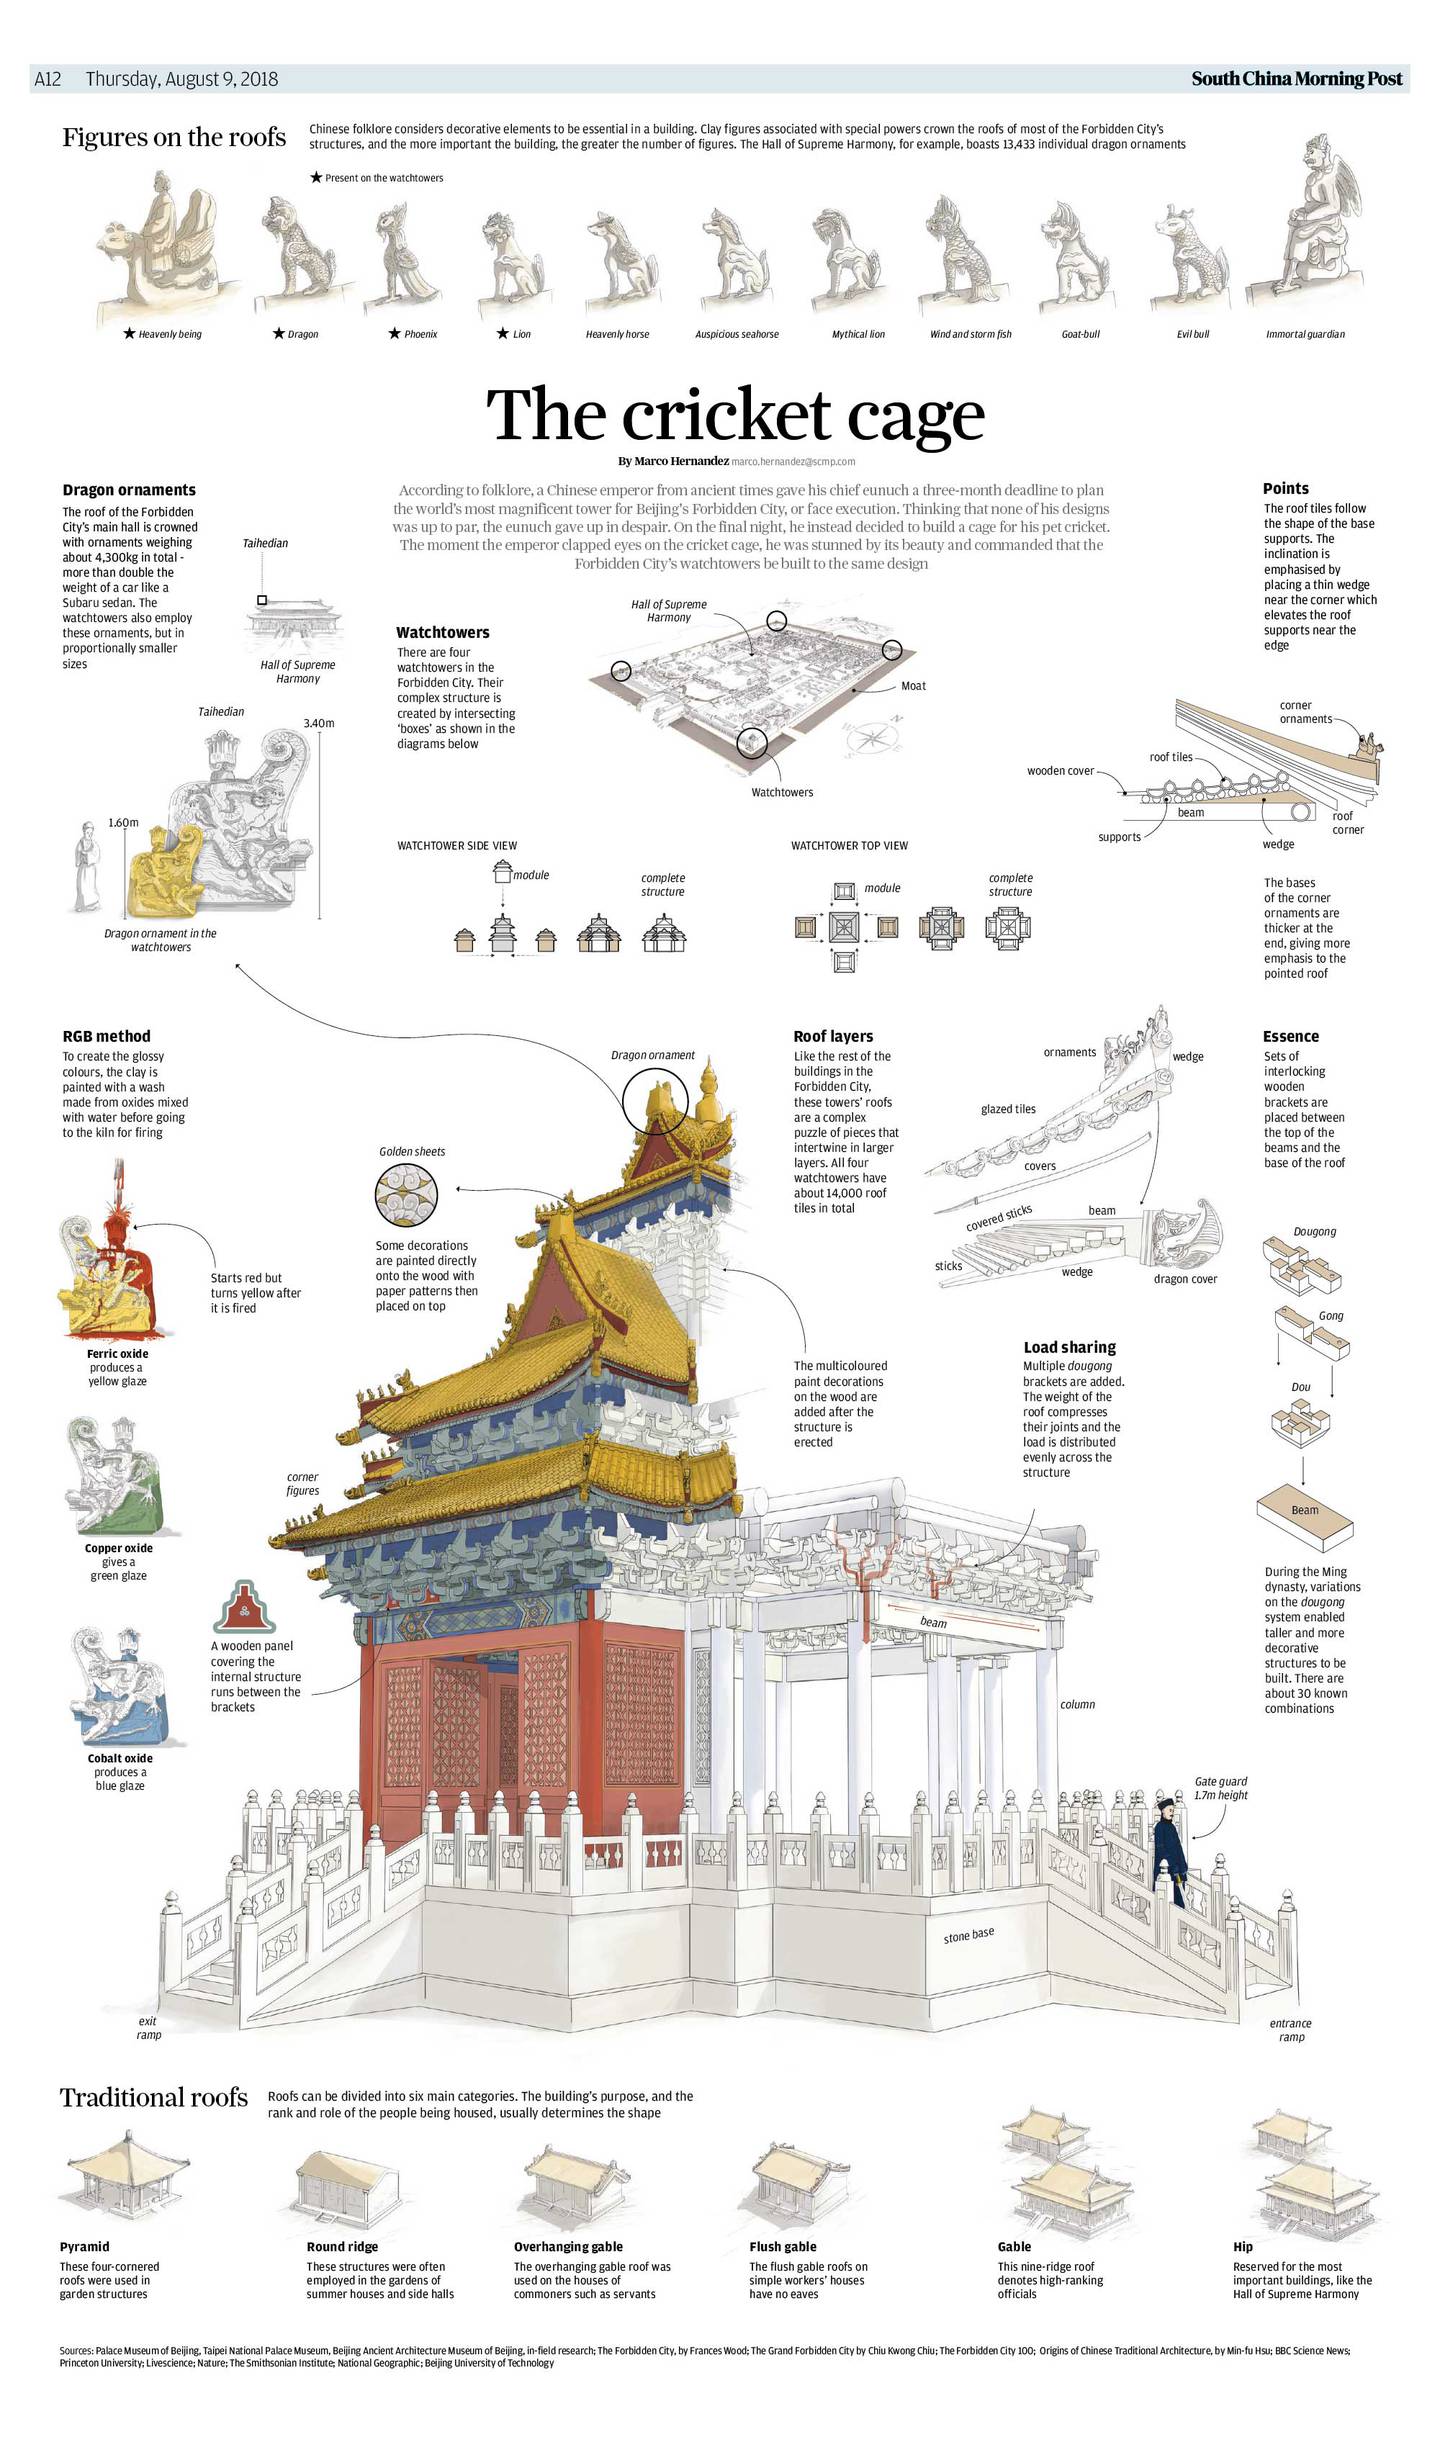 El trabajo sobre la Ciudad Perdida de Beijing tuvo ocho capítulos en los que se exploraron detalles de la construcción de la ciudad que albergaba al emperador de China. Marco Hernández reporteó durante casi un año la información.